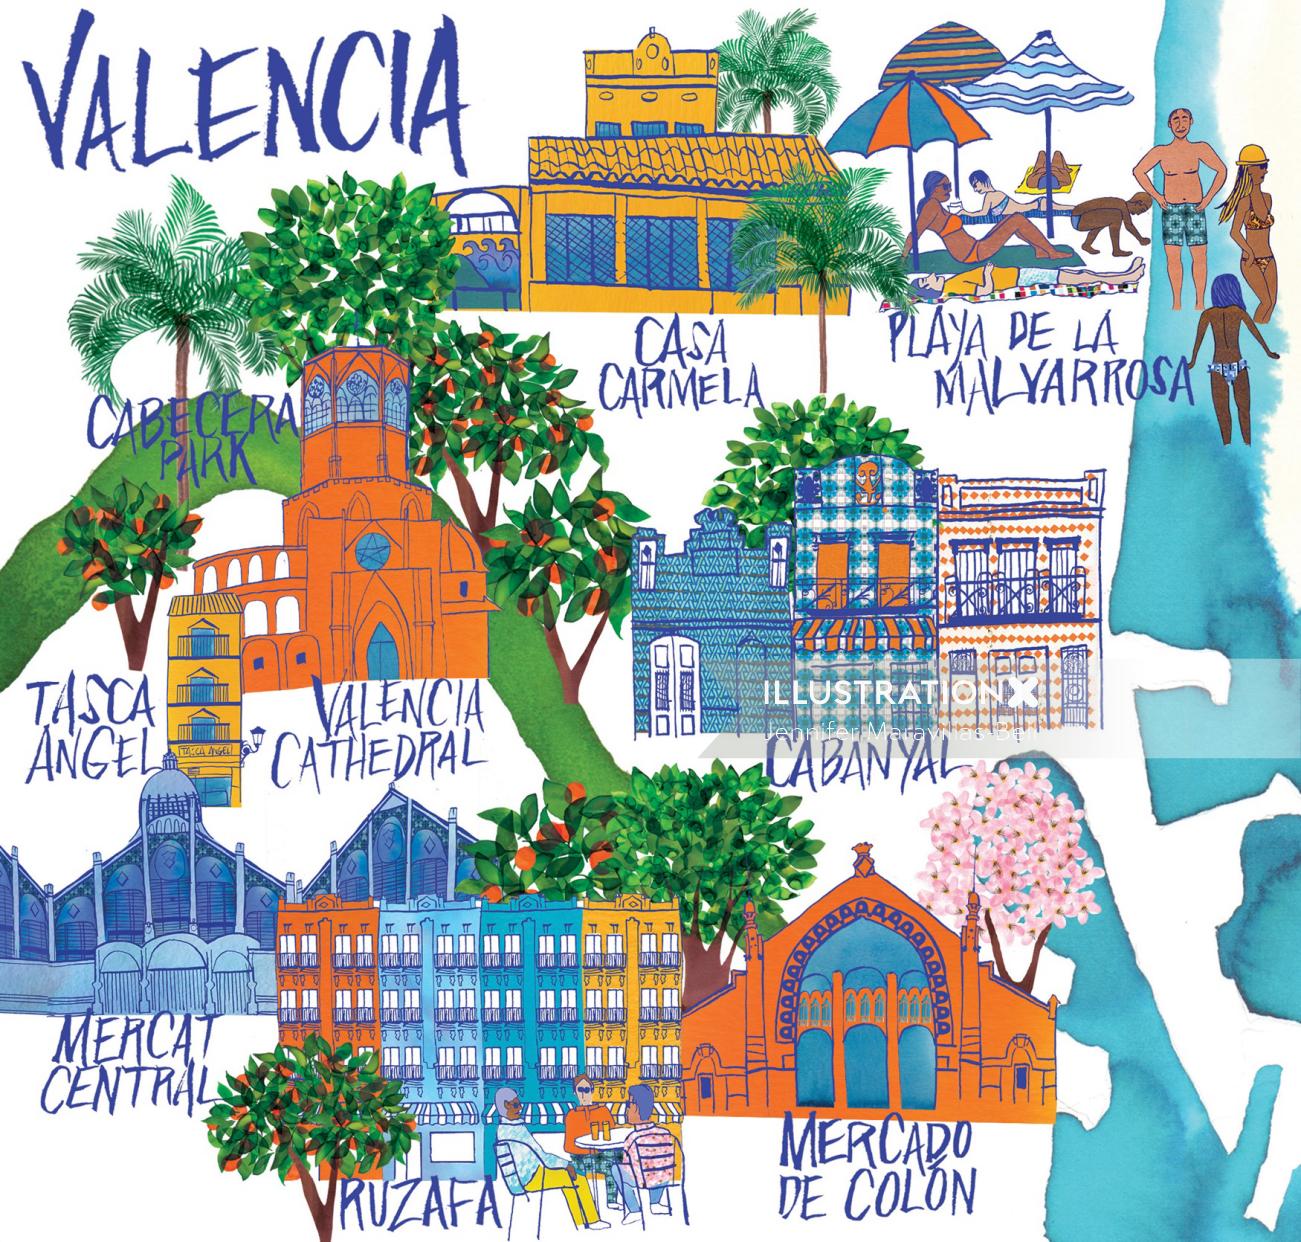 Uma ilustração da cidade de Valência